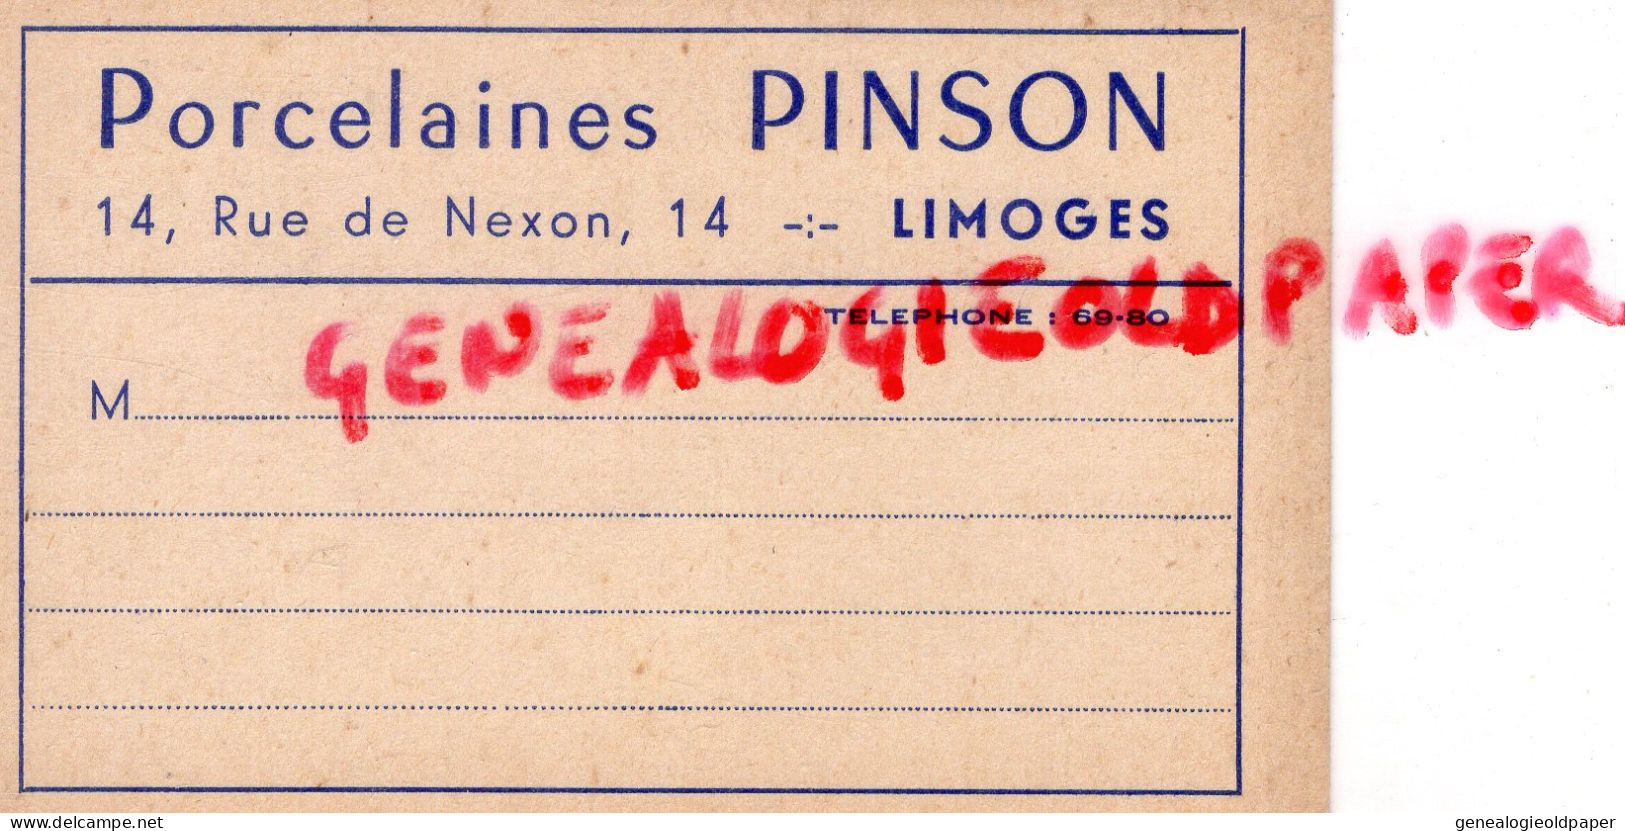 87- LIMOGES- CARTE COMMERCIALE CARTON RIGIDE PORCELAINES PORCELAINE PINSON - 14 RUE DE NEXON - Cartes De Visite